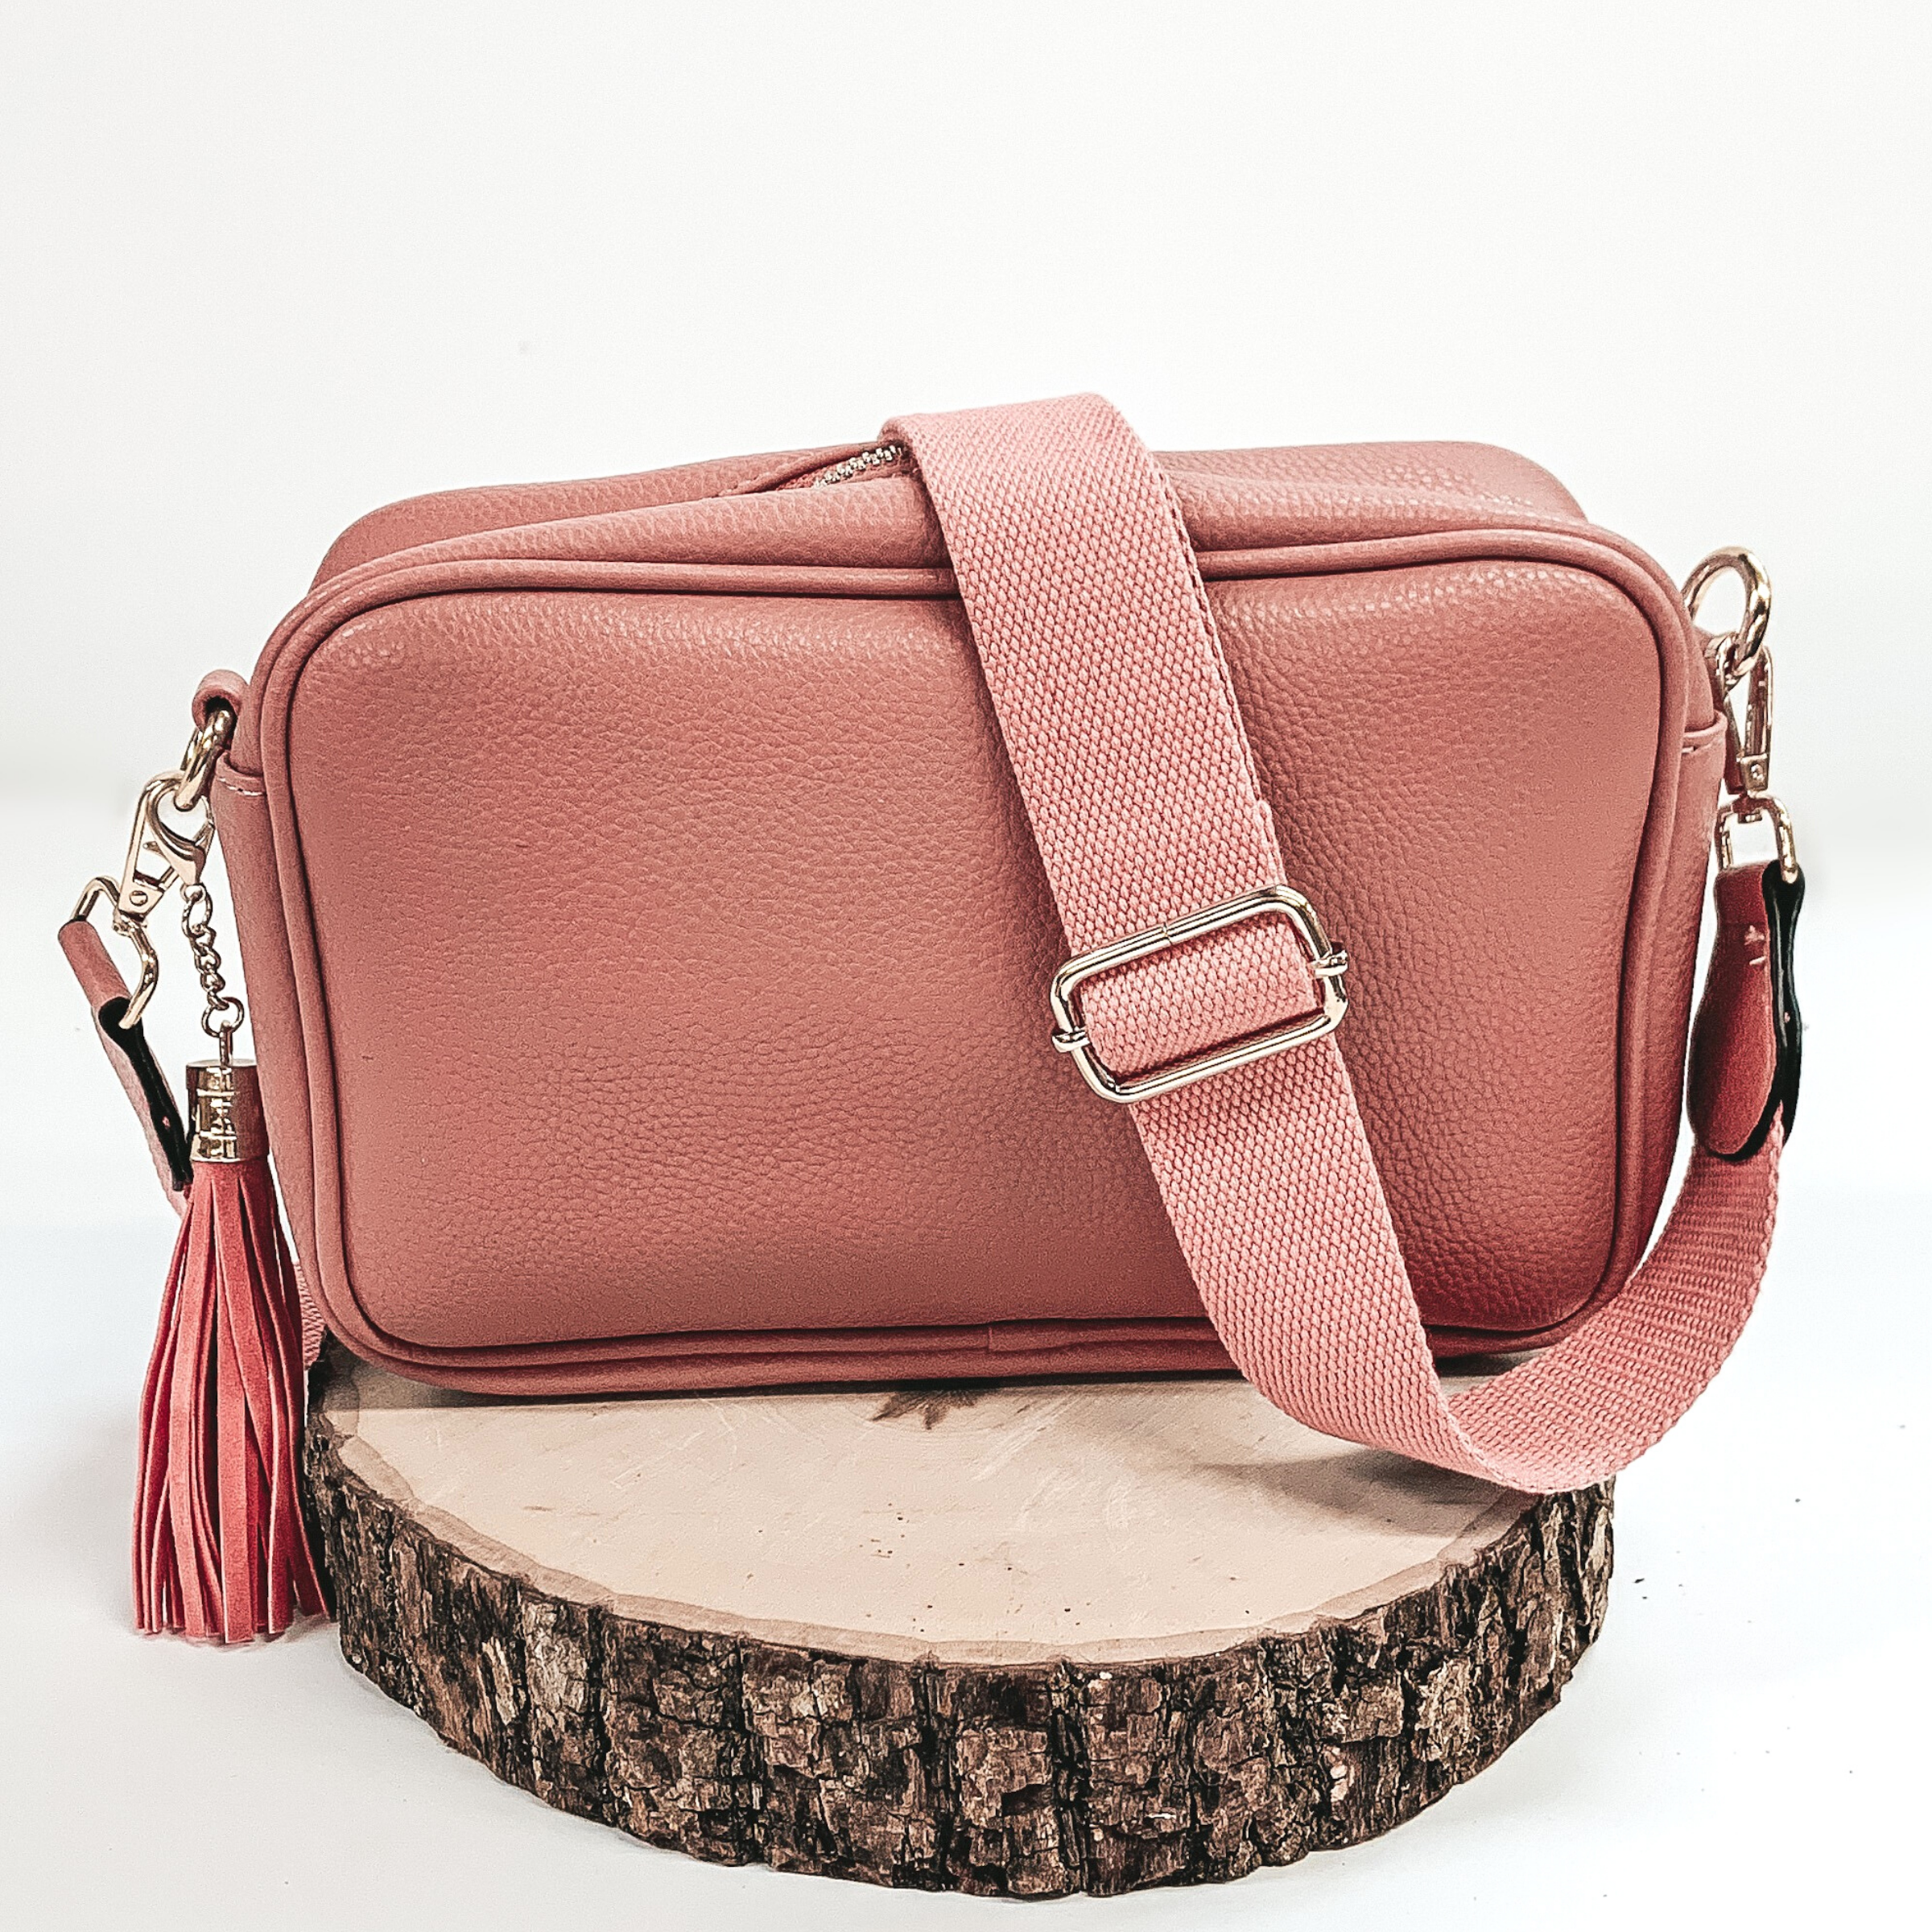 Buy Jove Women Pink Handbag Pink Online @ Best Price in India | Flipkart.com